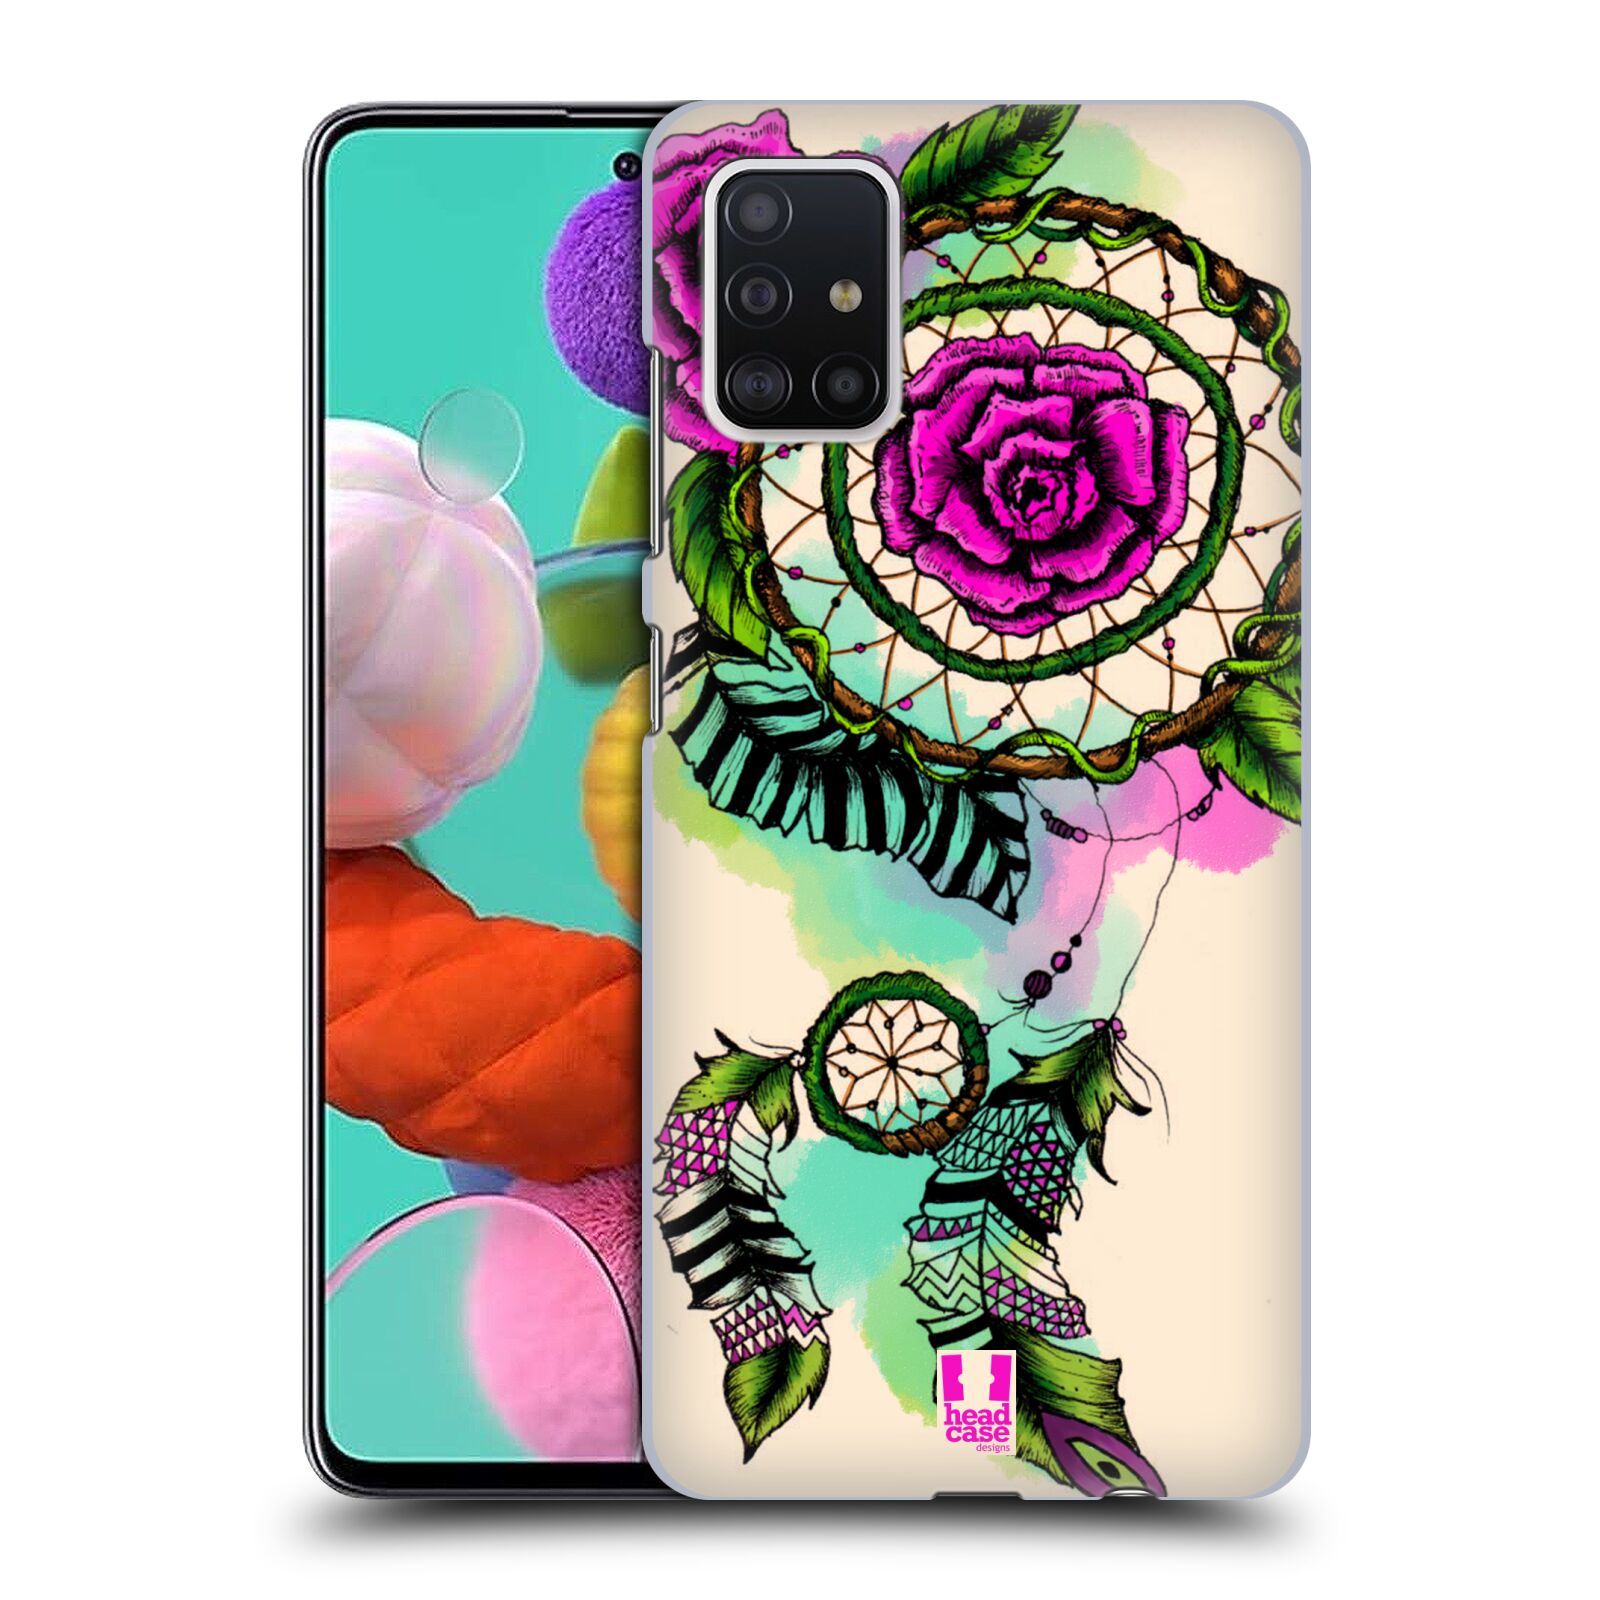 Pouzdro na mobil Samsung Galaxy A51 - HEAD CASE - vzor Květy lapač snů růže